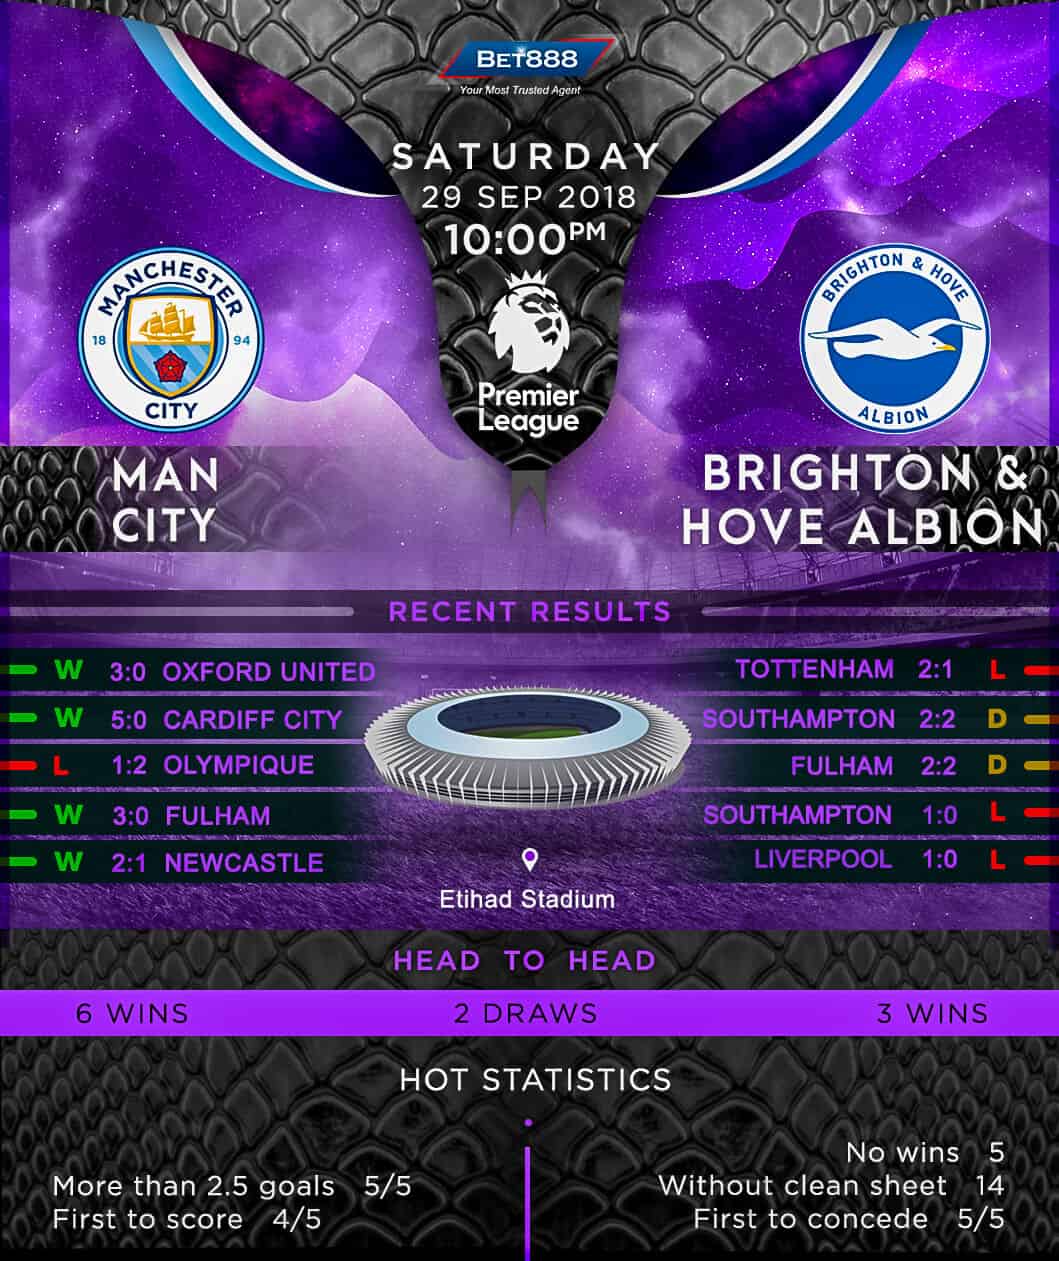 Manchester City vs Brighton & Hove Albion 29/09/18